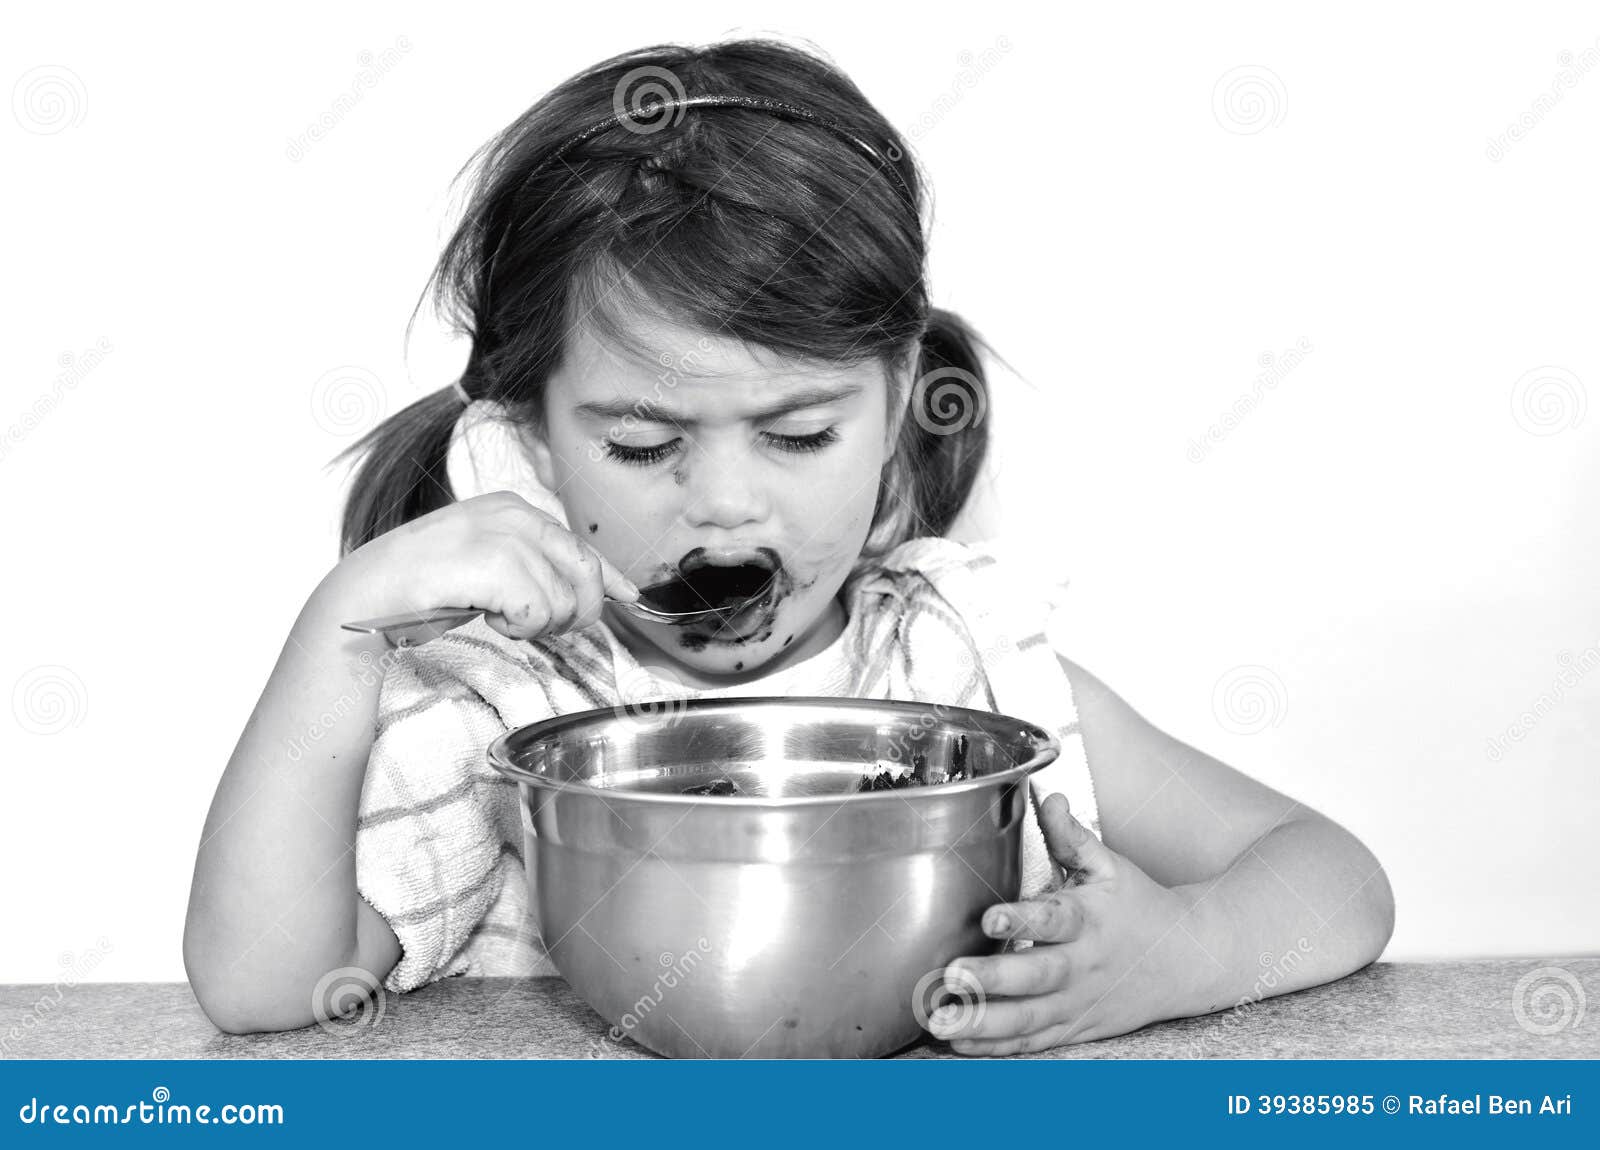 little girl eats chocolate cream